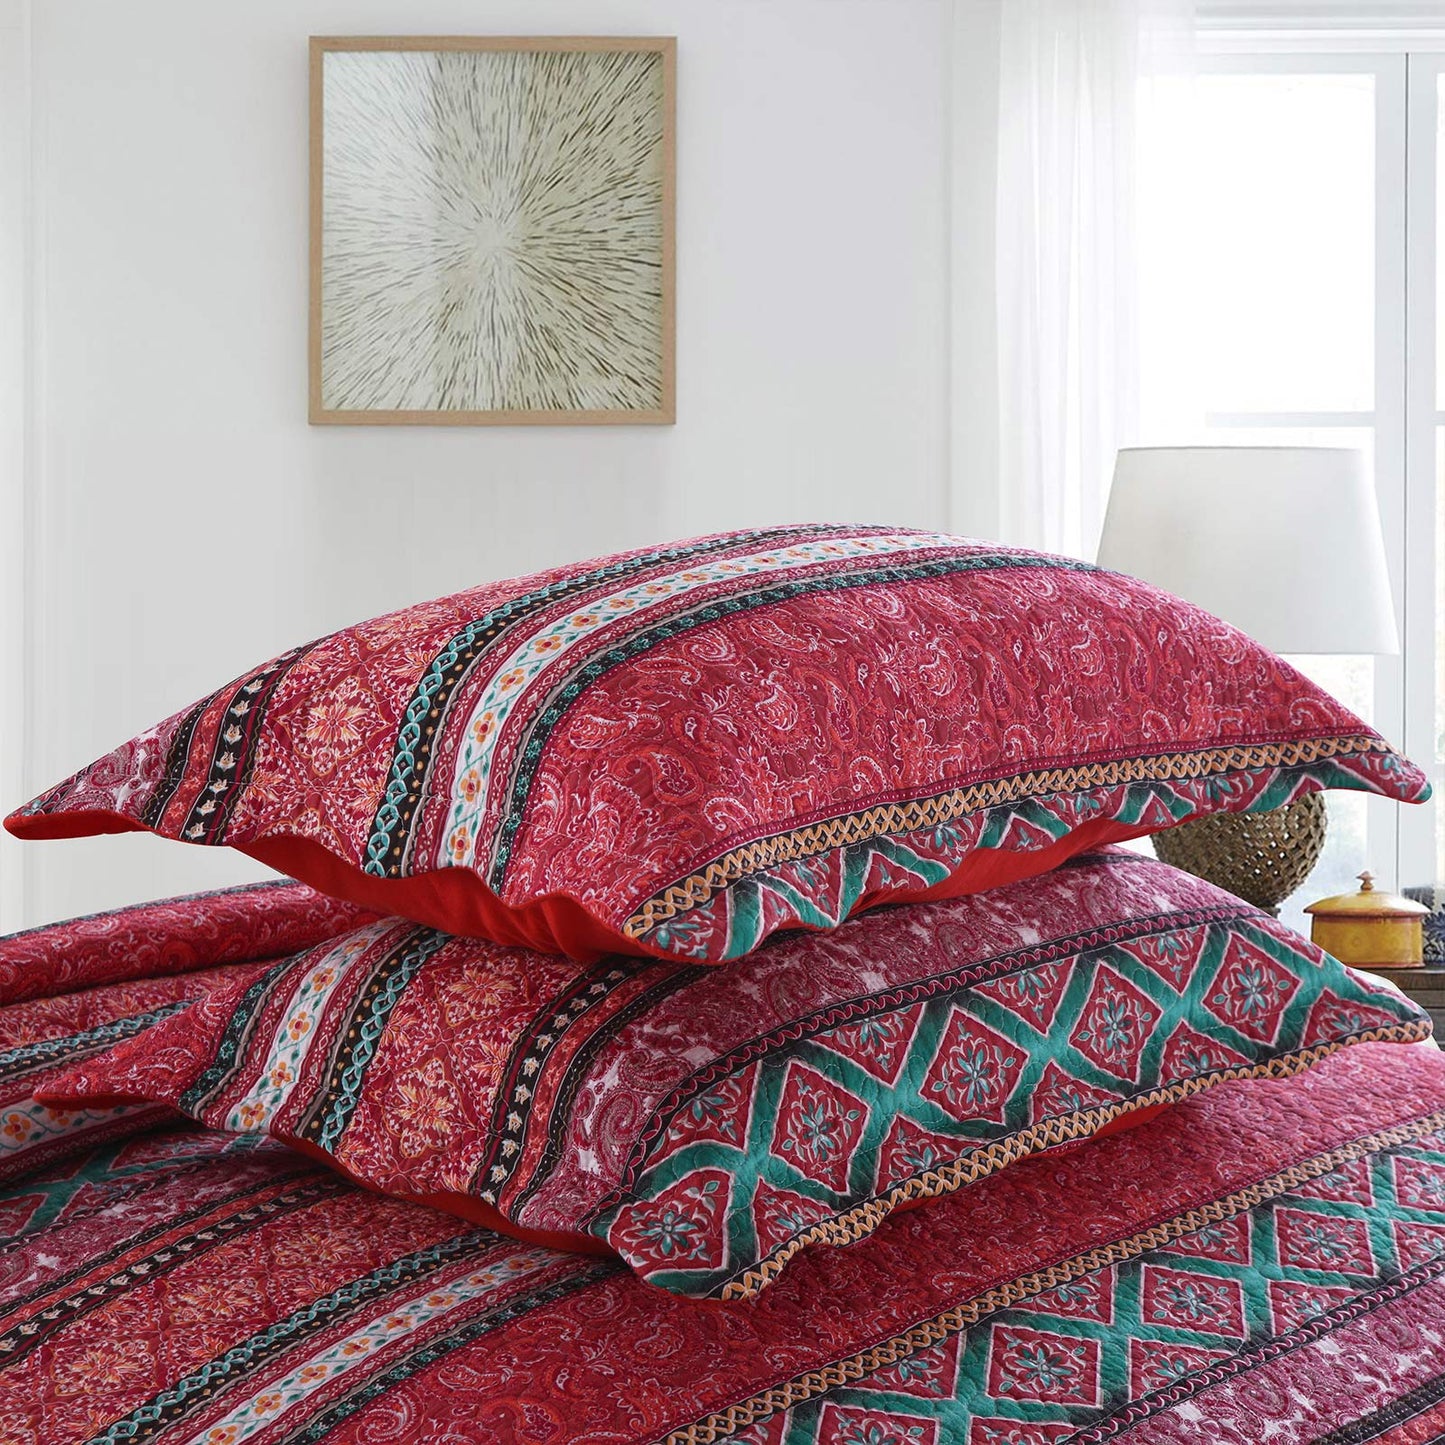 Cotton Bedspread Quilt Sets-Reversible Patchwork Coverlet Set, European Gorgeous Floral Pattern